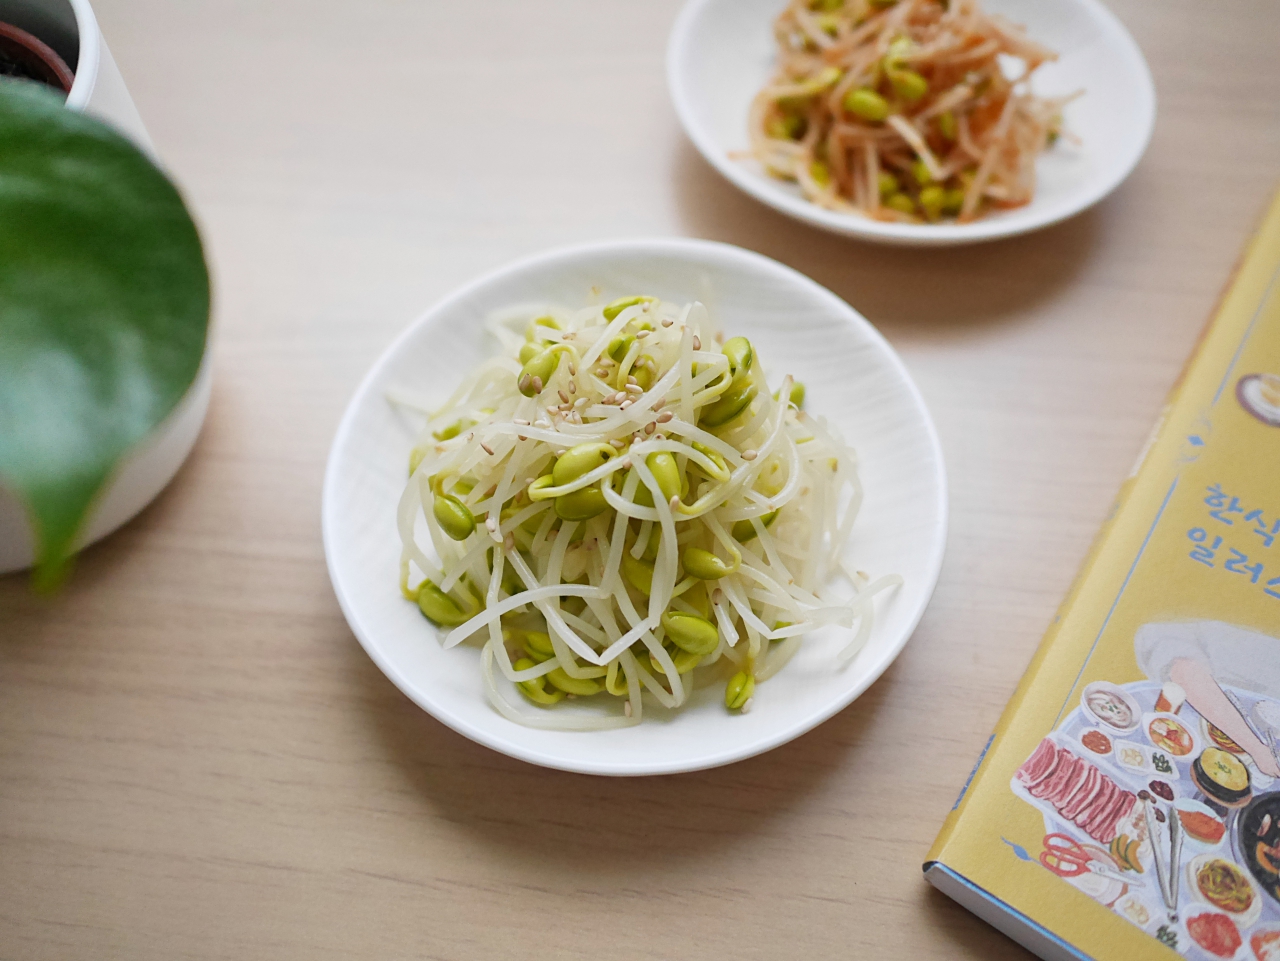 【食譜】韓式涼拌豆芽 夏天的清爽涼拌菜 只要二種調味料就搞定 @Maruko與美食有個約會